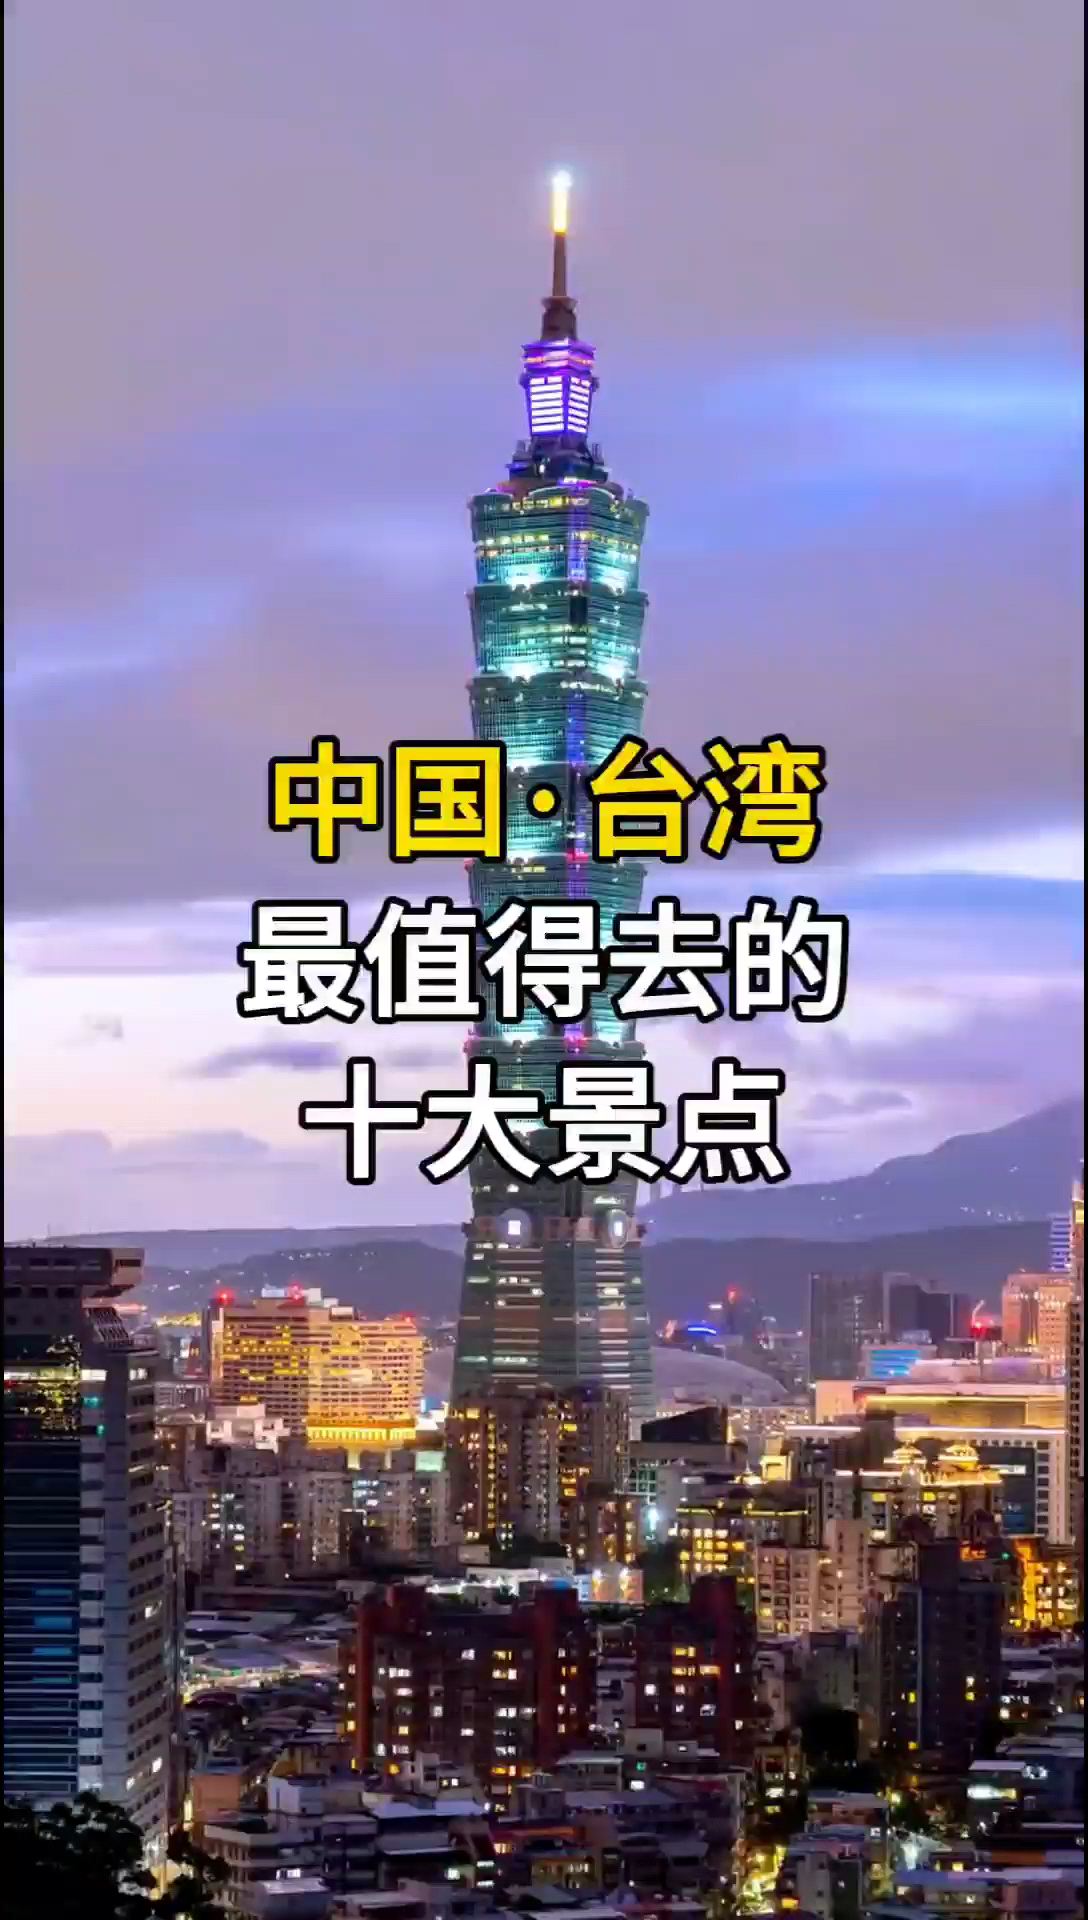 中国台湾最值去的十大景点，台湾旅游景点，台湾旅游线路，台湾旅游攻略。#旅行攻略 #台湾旅行 #宝岛之